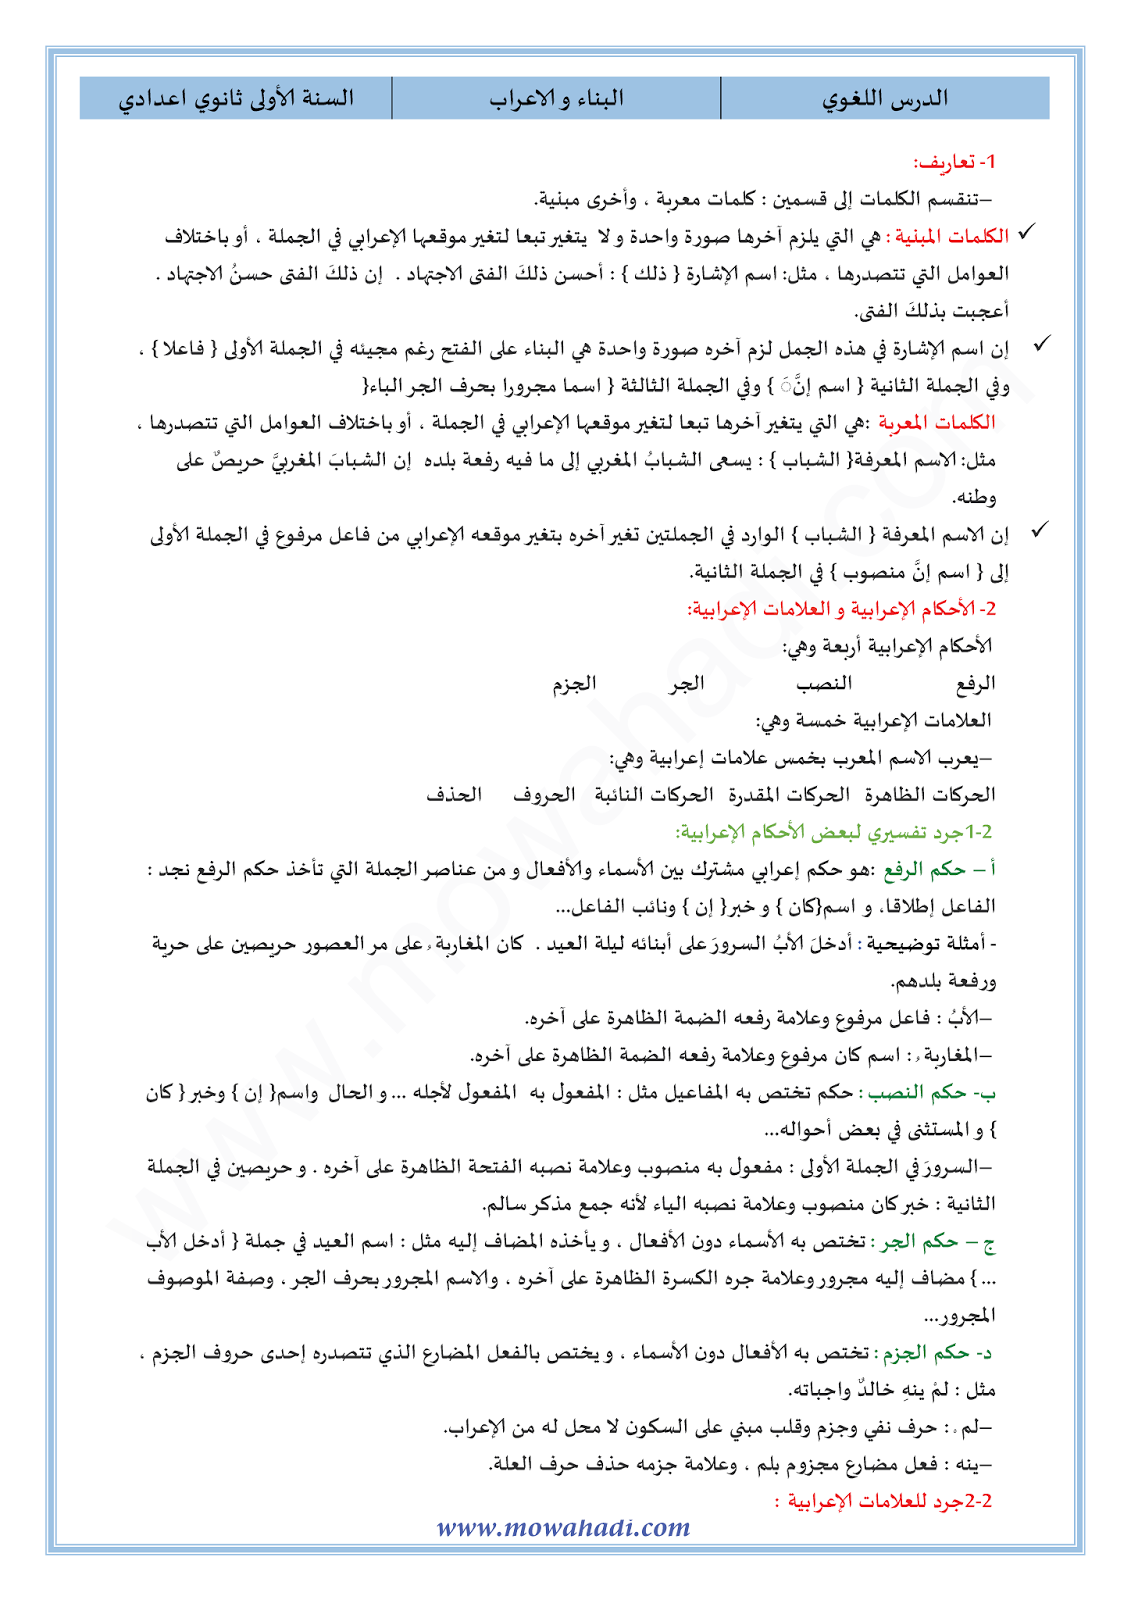 الدرس اللغوي الاعراب و البناء للسنة الأولى اعدادي في مادة اللغة العربية 7-cours-dars-loghawi1_001